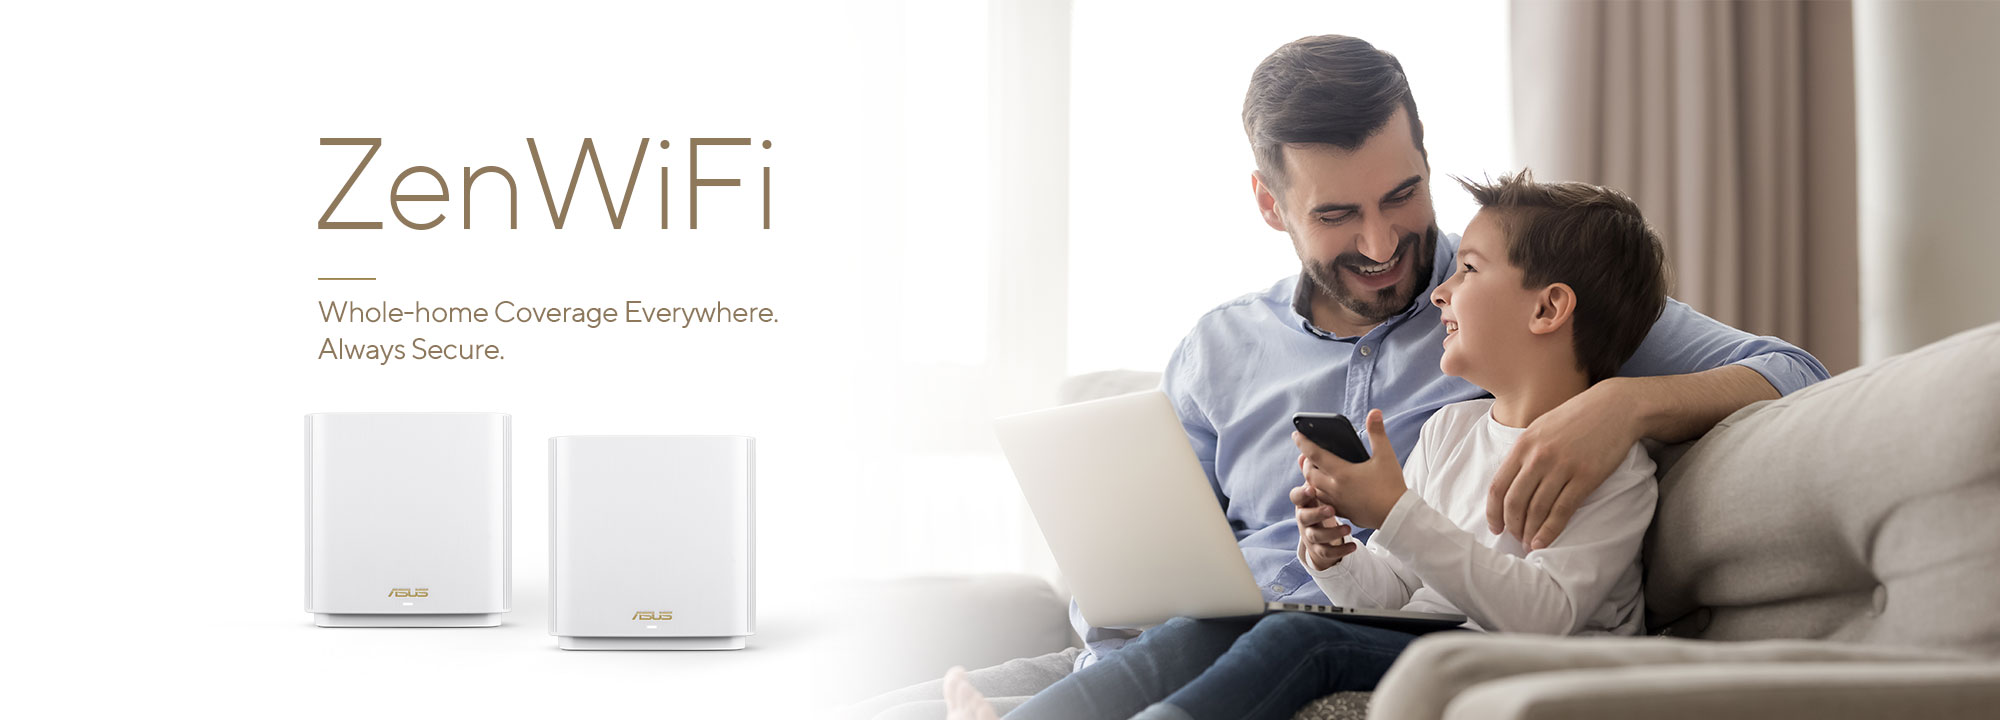 ASUS ZenWiFi, tüm cihazlarınız için kararlı ve hızlı WiFi bağlantısı sağlayan en iyi tüm ev kapsamasına sahip mesh WiFi sistemidir.